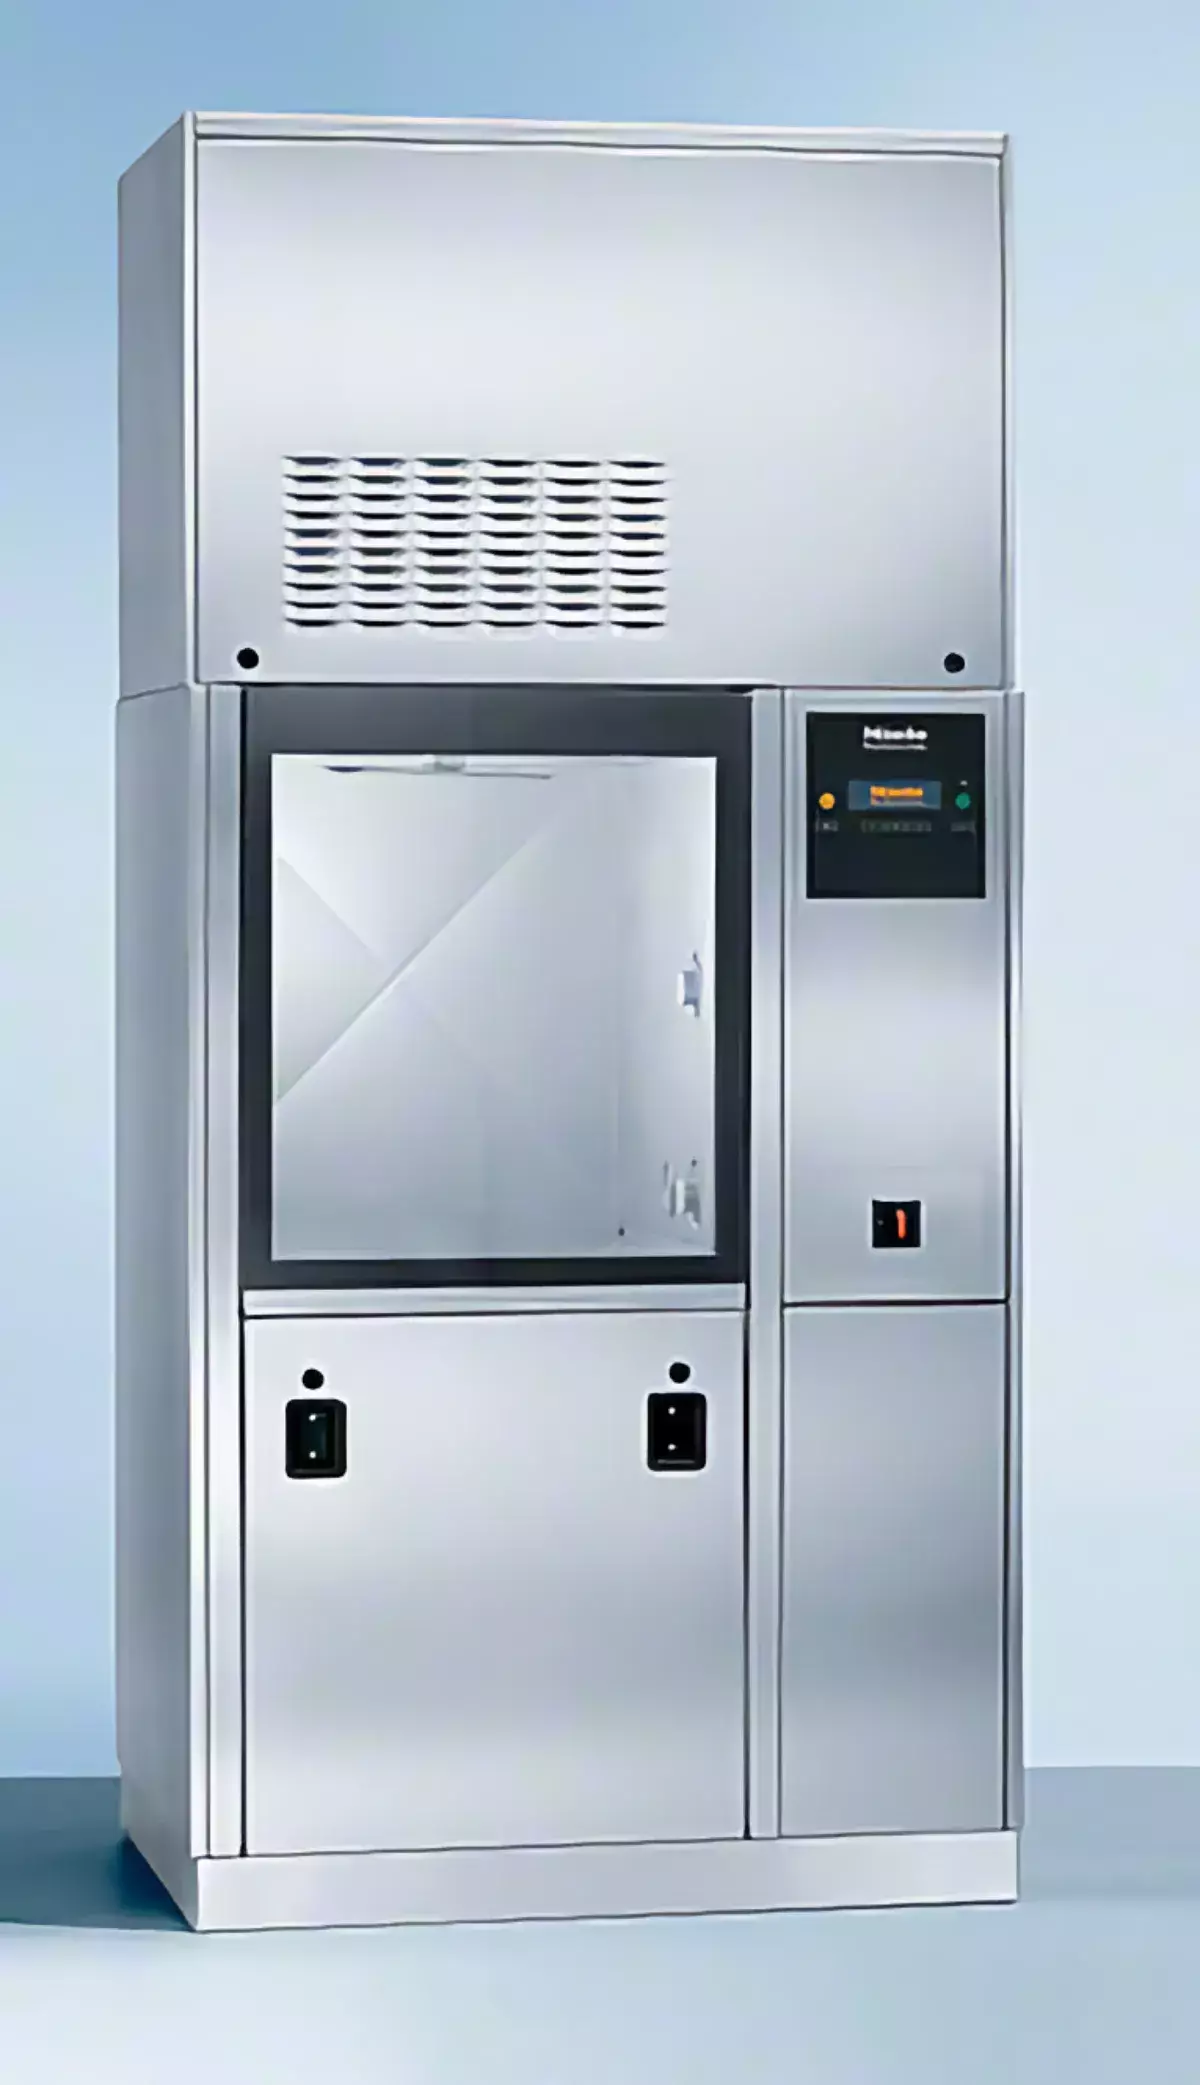 PG 8528 Паровой/электрический нагрев (переключение), 2-дверное исполнение, с подъемными дверцами